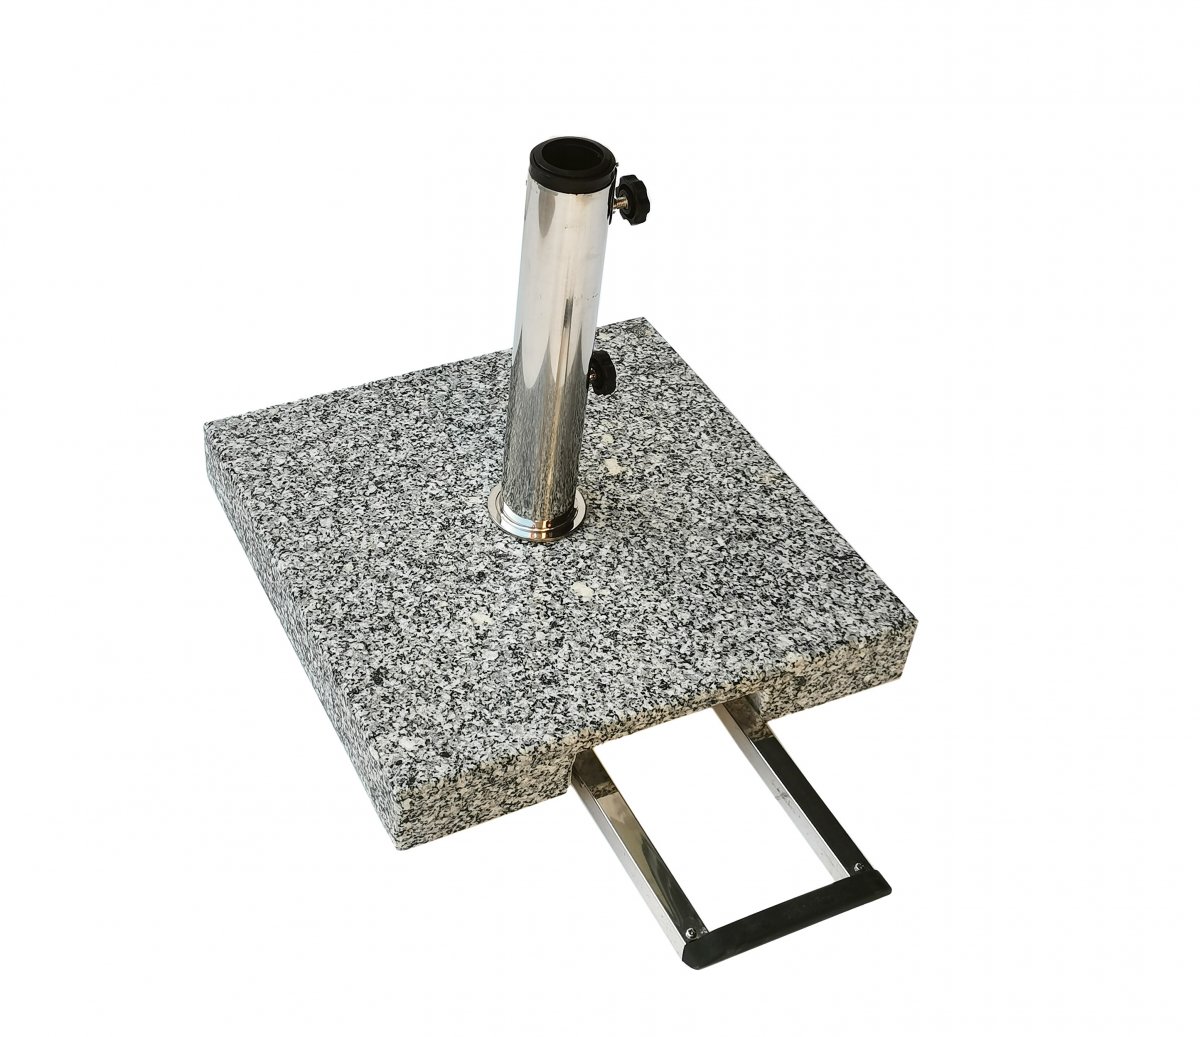 Parasolfod firkantet granit 45x45 cm /Hjul/Håndtag Grå 40 kg Til parasol str. Ø2,5 - 3,0 meter -